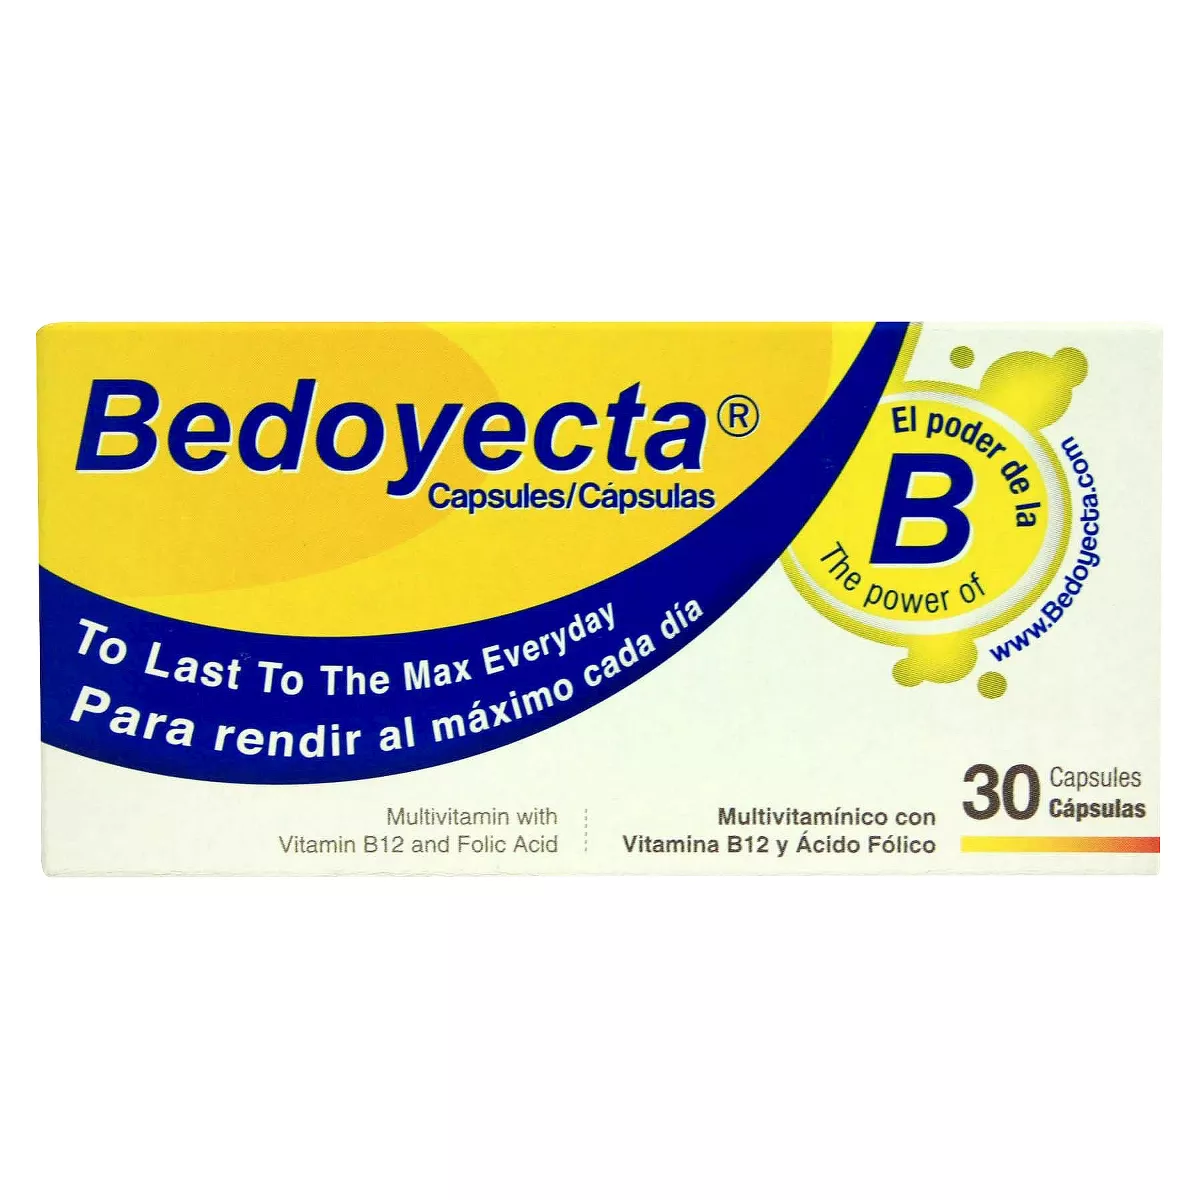 Bedoyecta Multivitamin Capsules